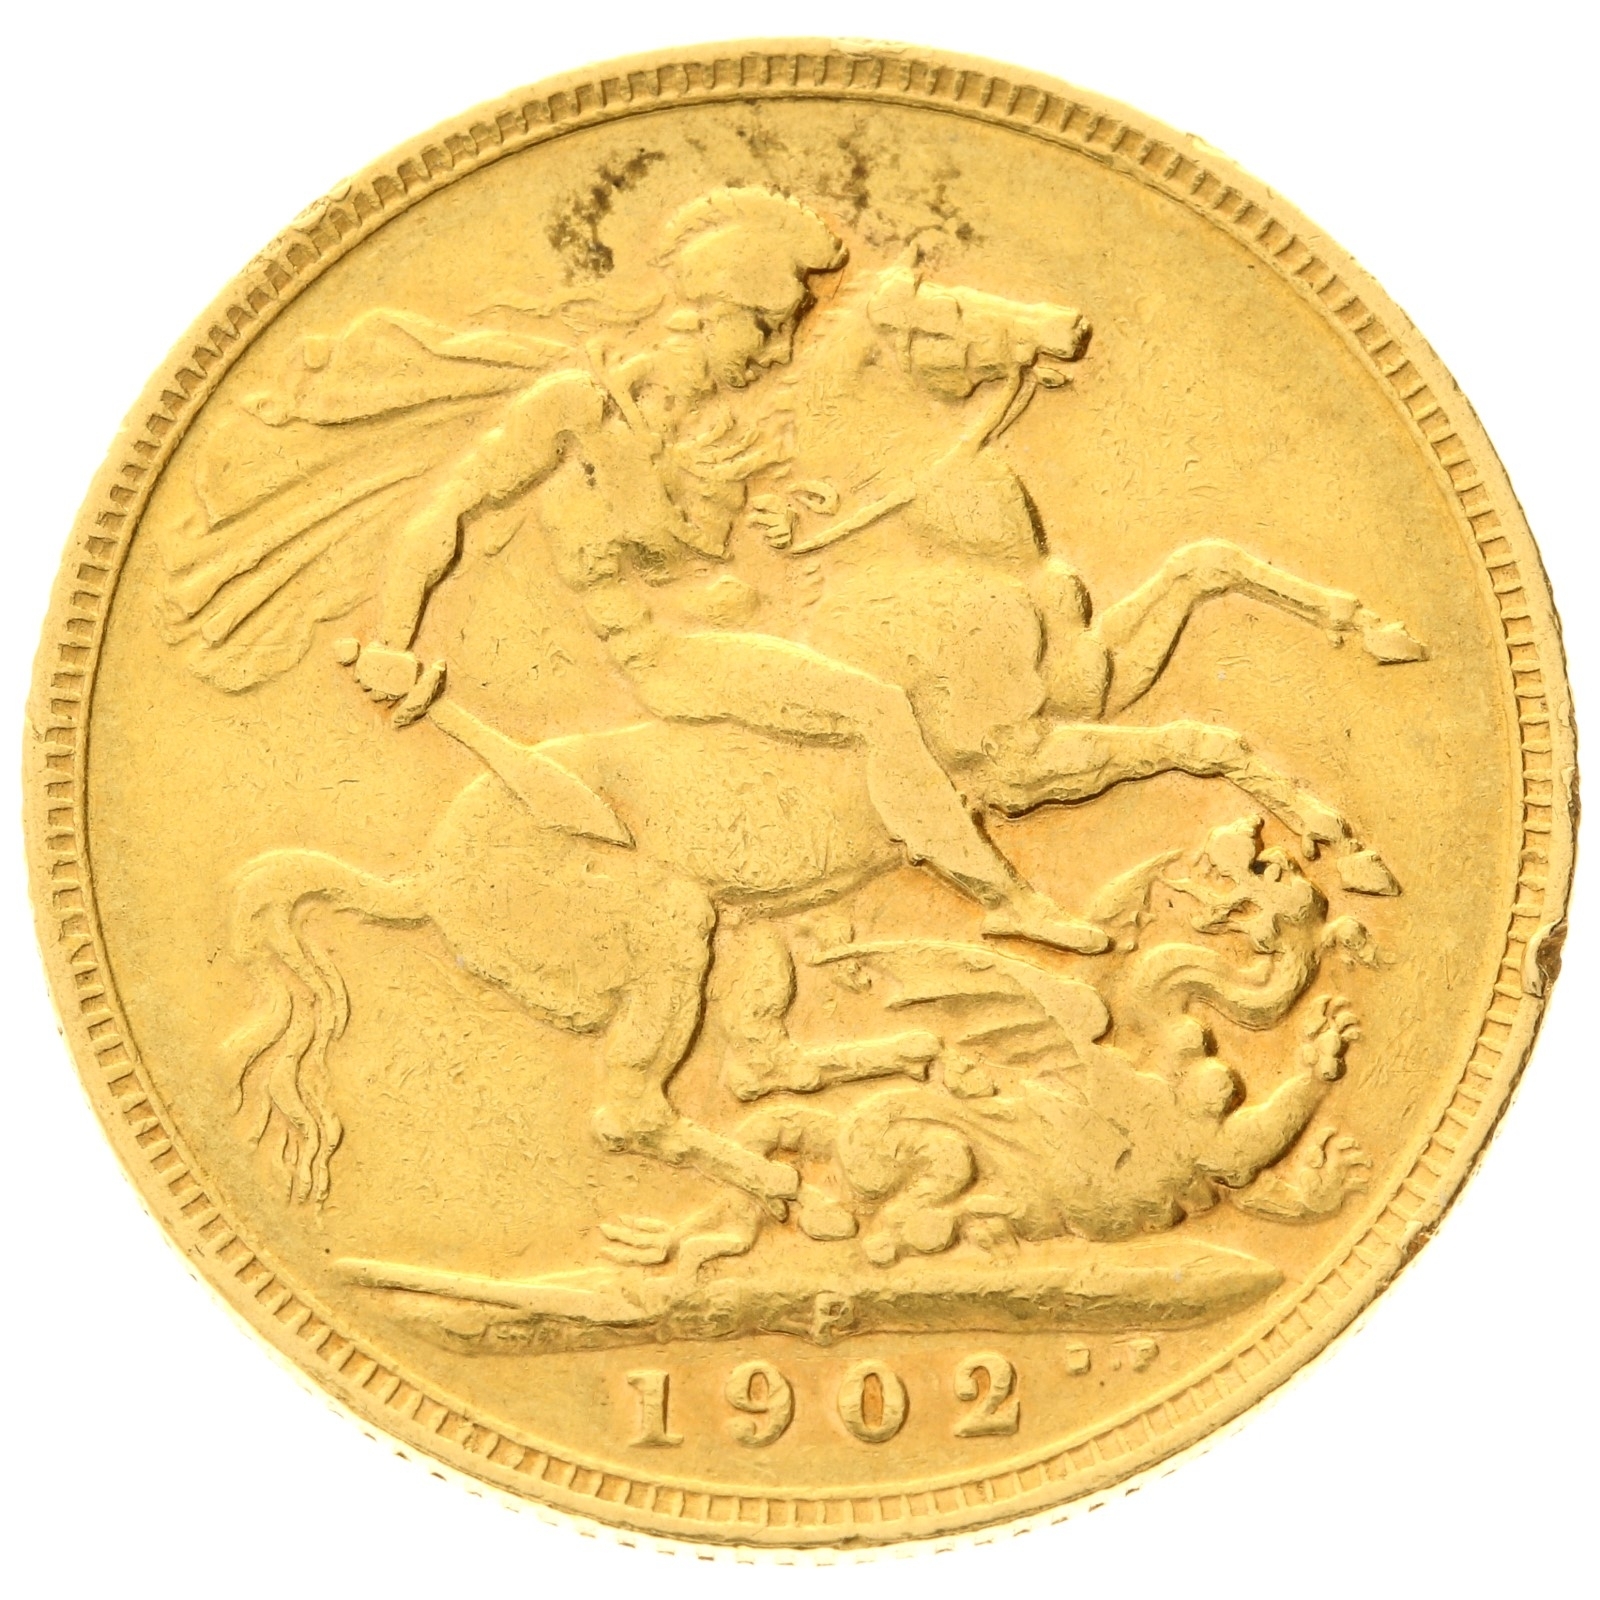 Australia - 1 Sovereign - 1902 - P - Edward VII